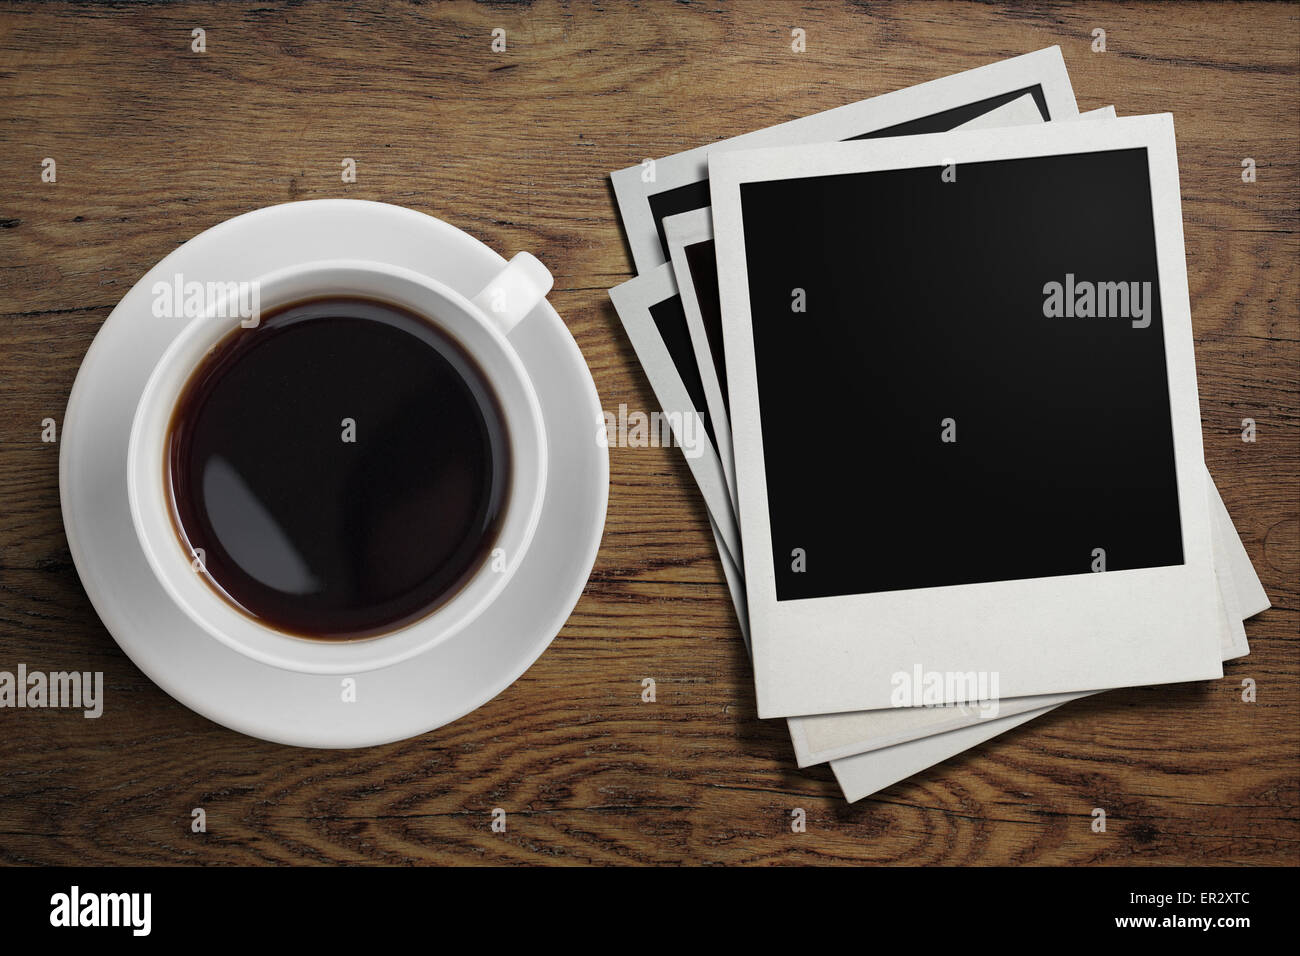 Tasse à café et cadres photo Polaroid sur table Banque D'Images